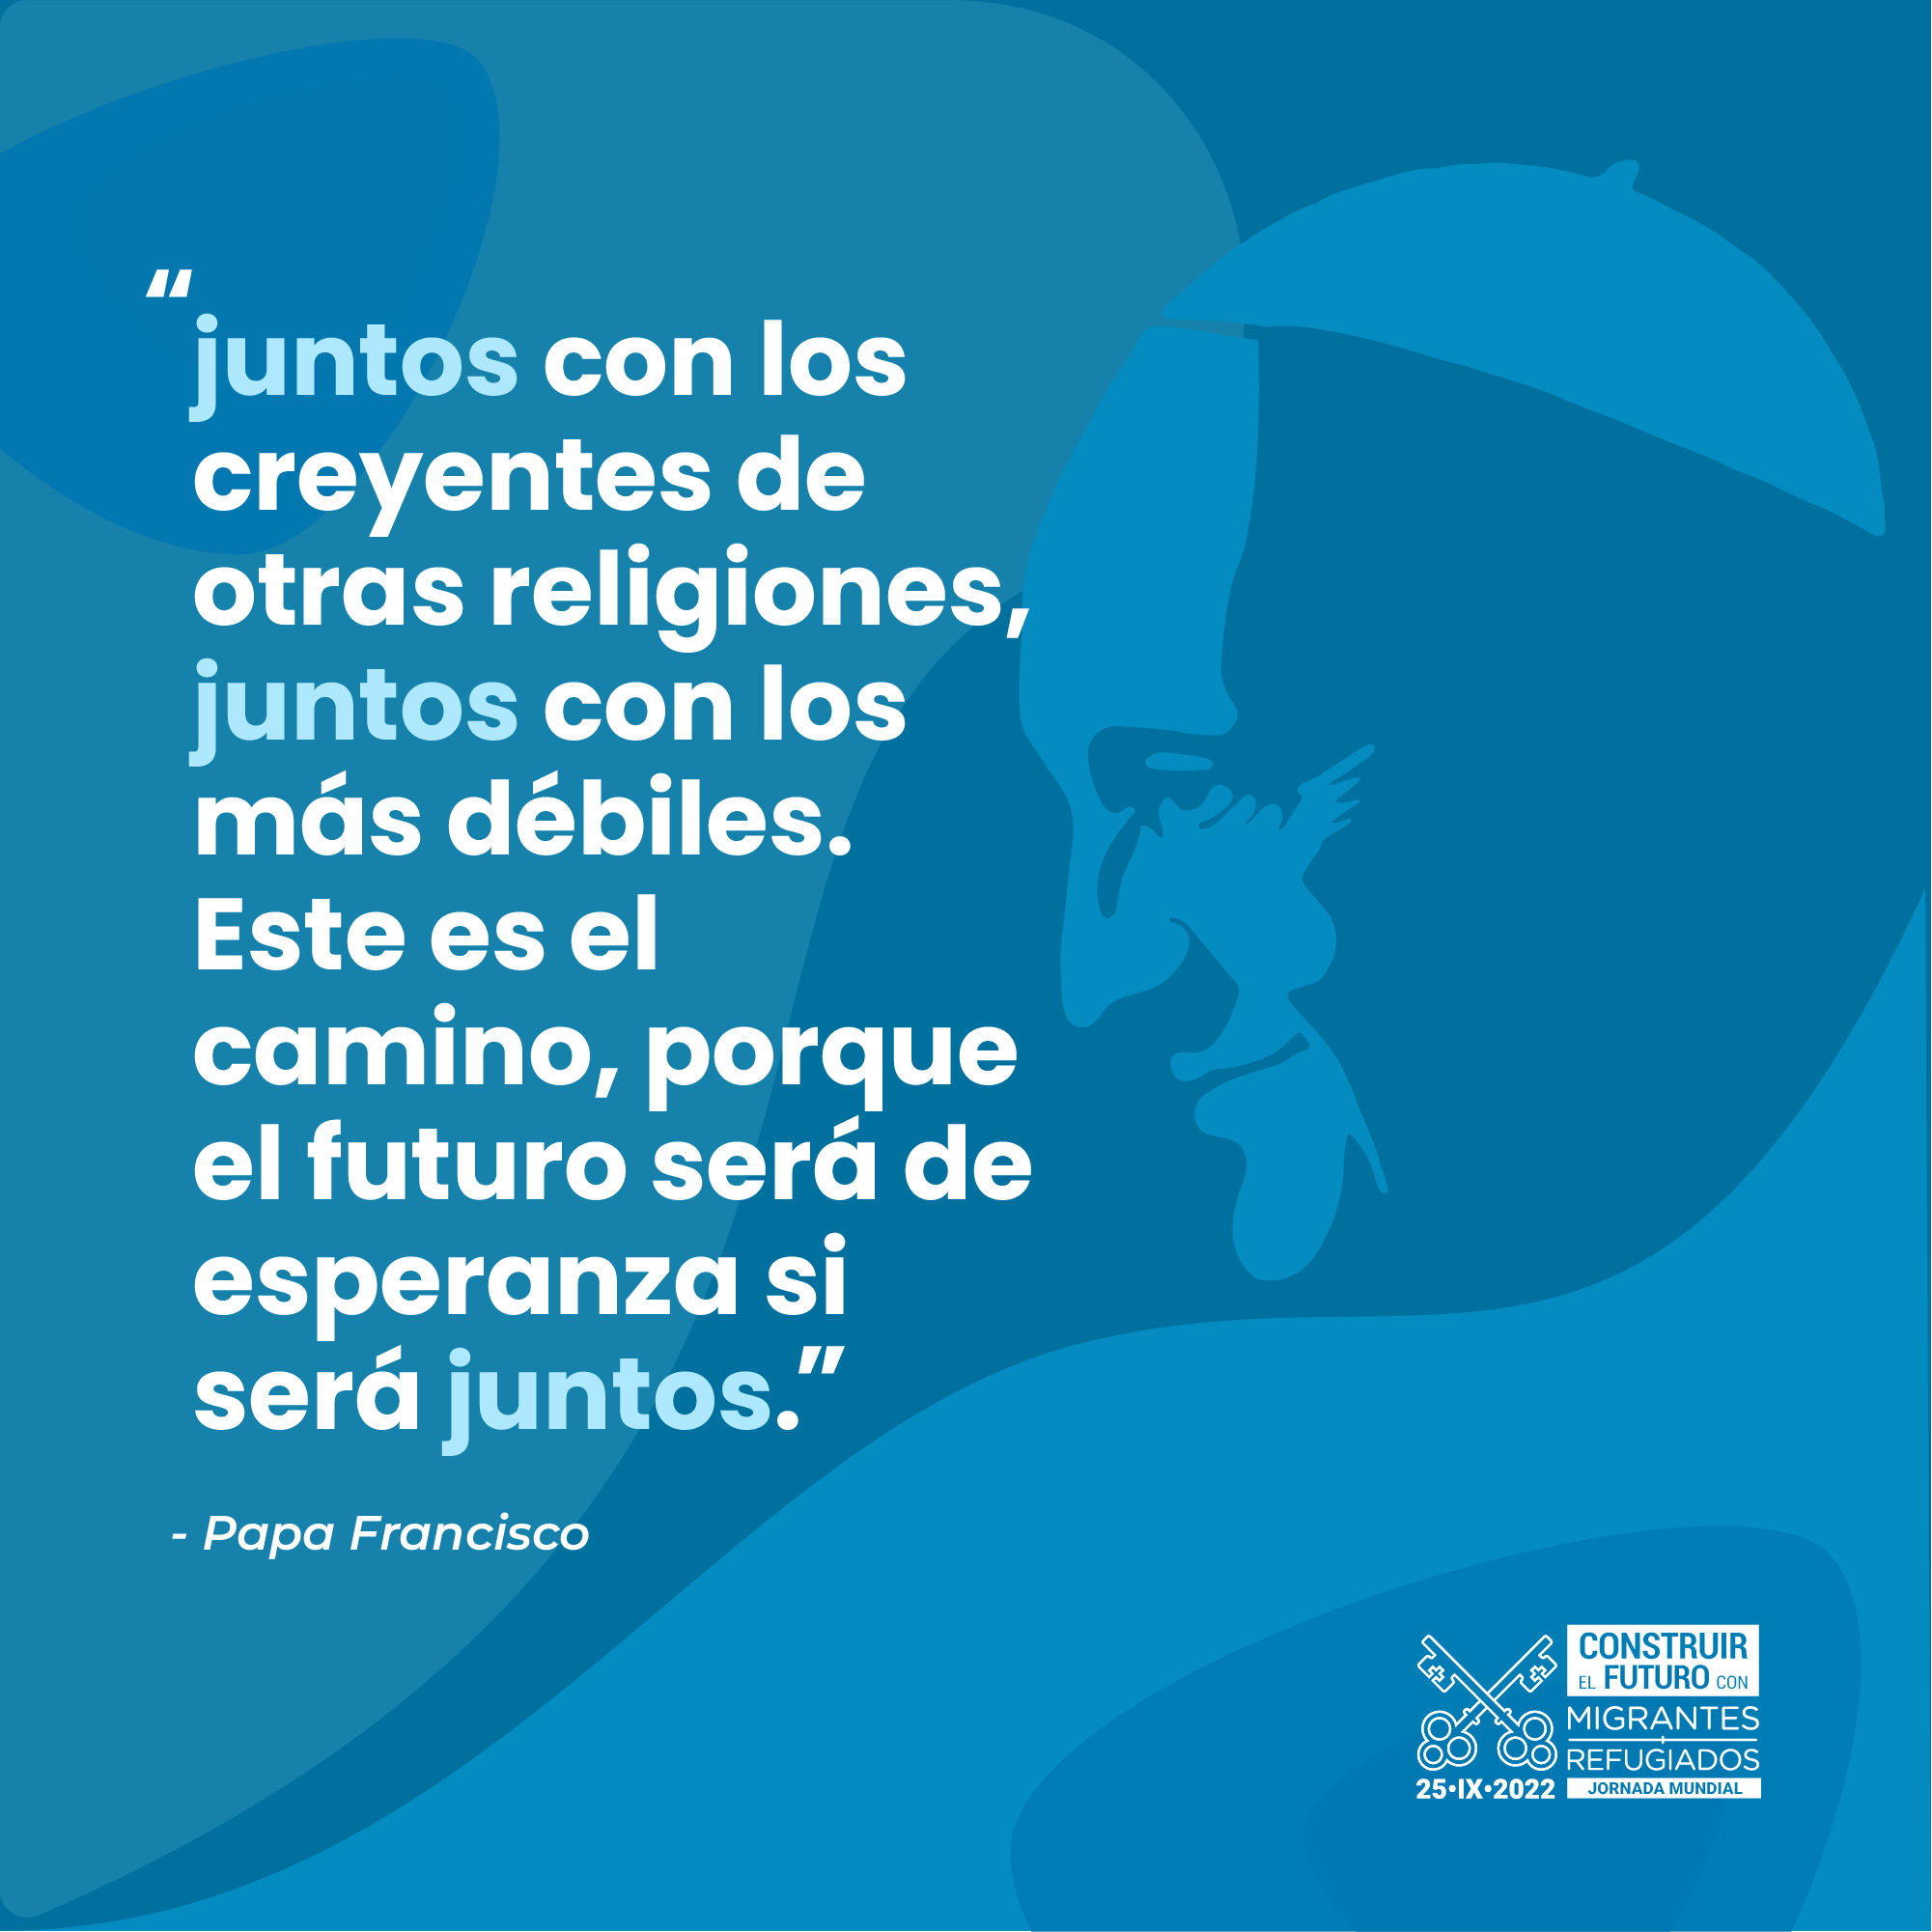 Jornada Mundial del Migrante y el Regugiado. Materiales tema 1: "Un futuro que debemos construir juntos". Papa Francisco.